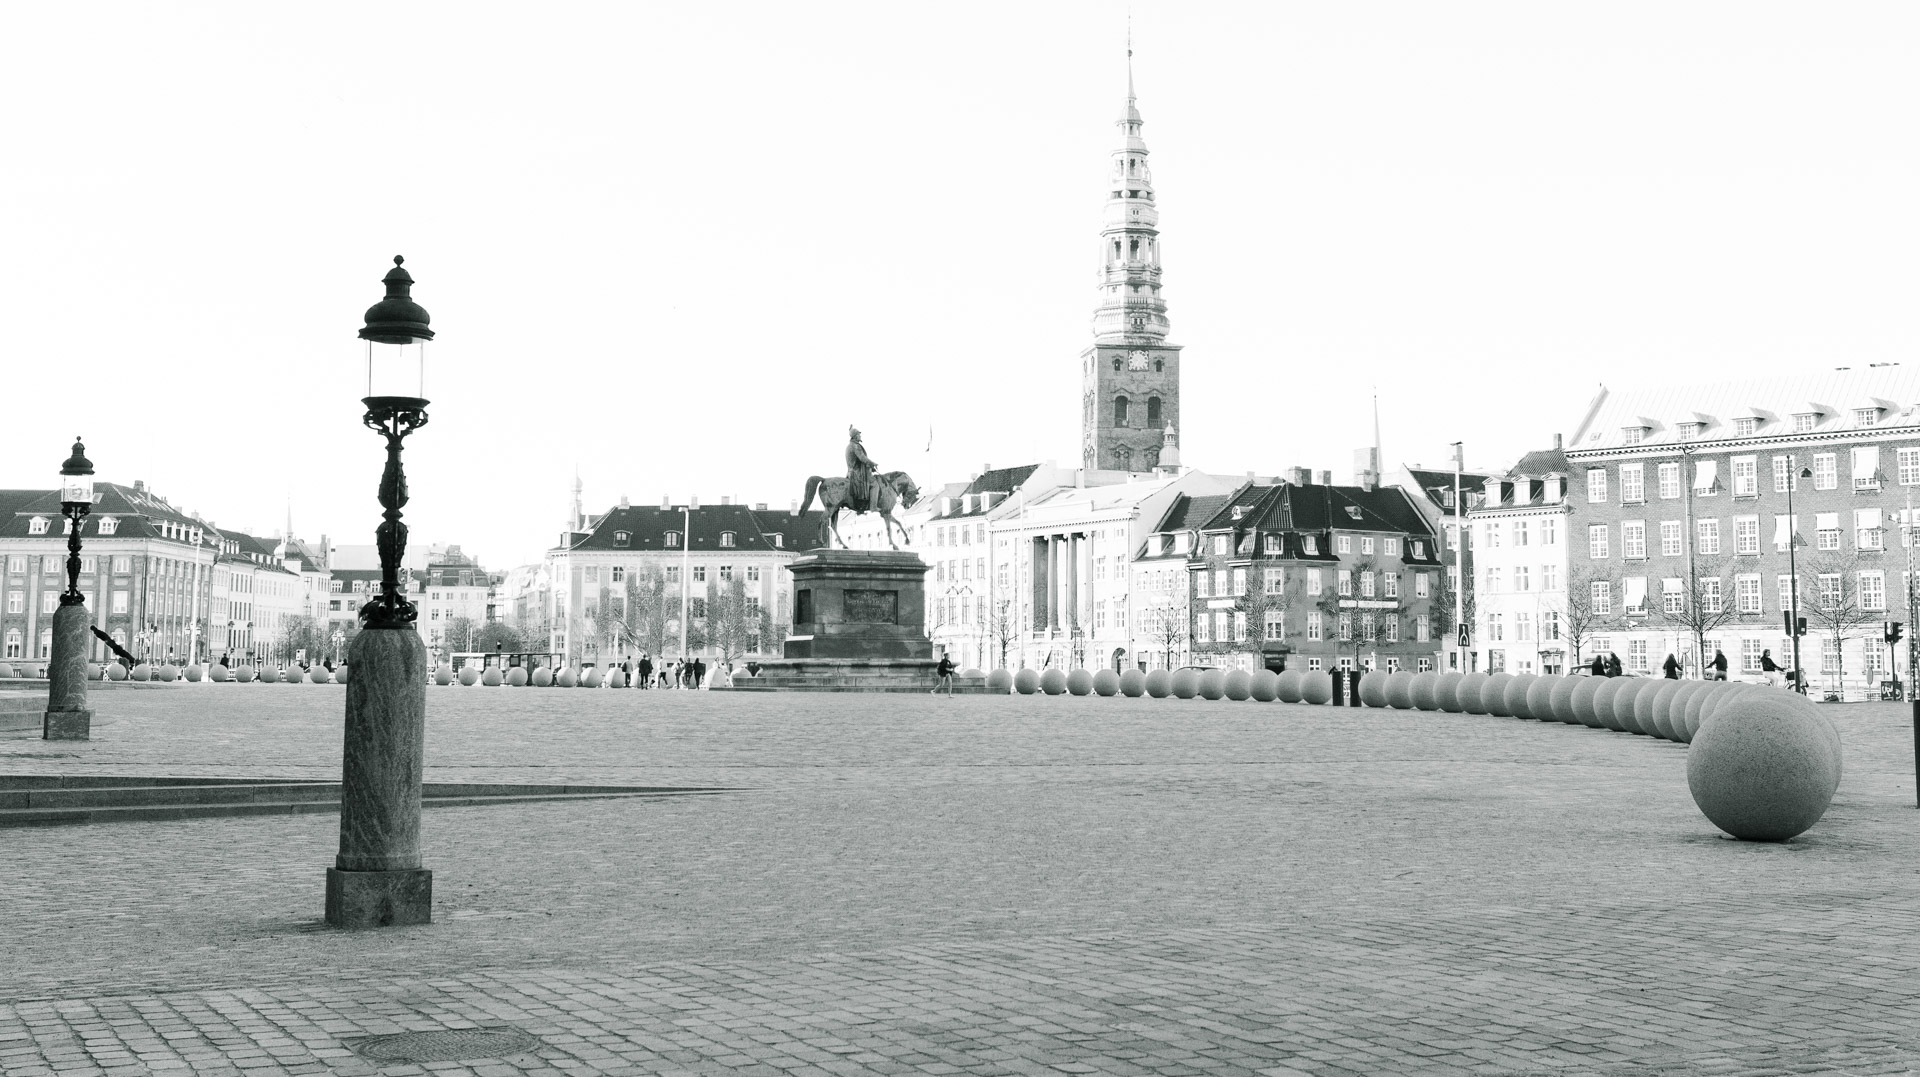 Danish Parliament Square 1...